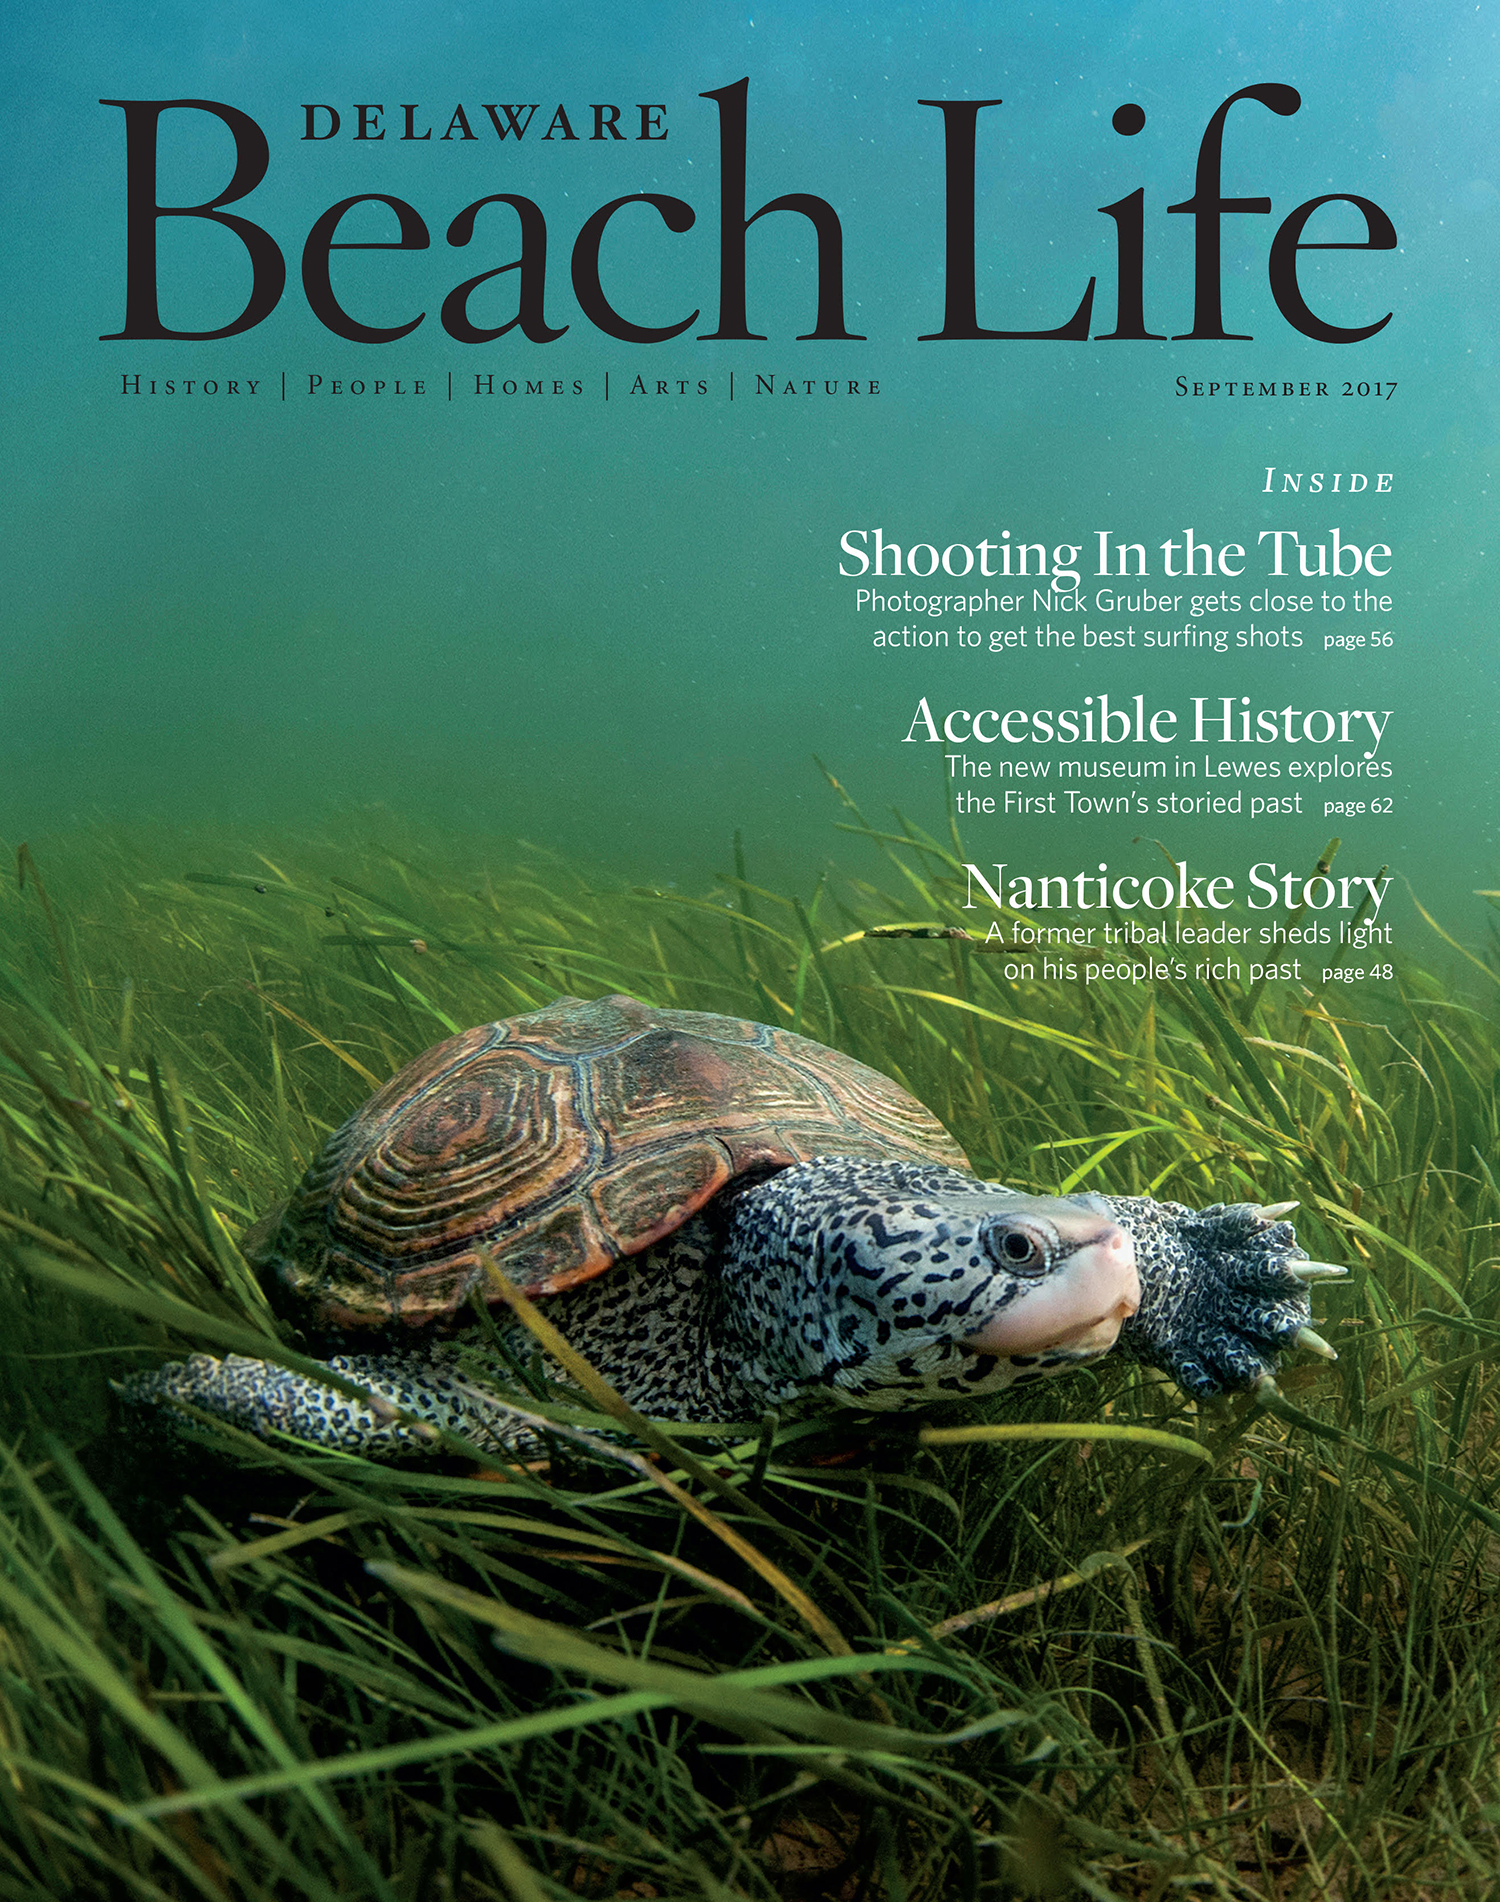 Delaware Beach Life Cover - September 2017.jpg